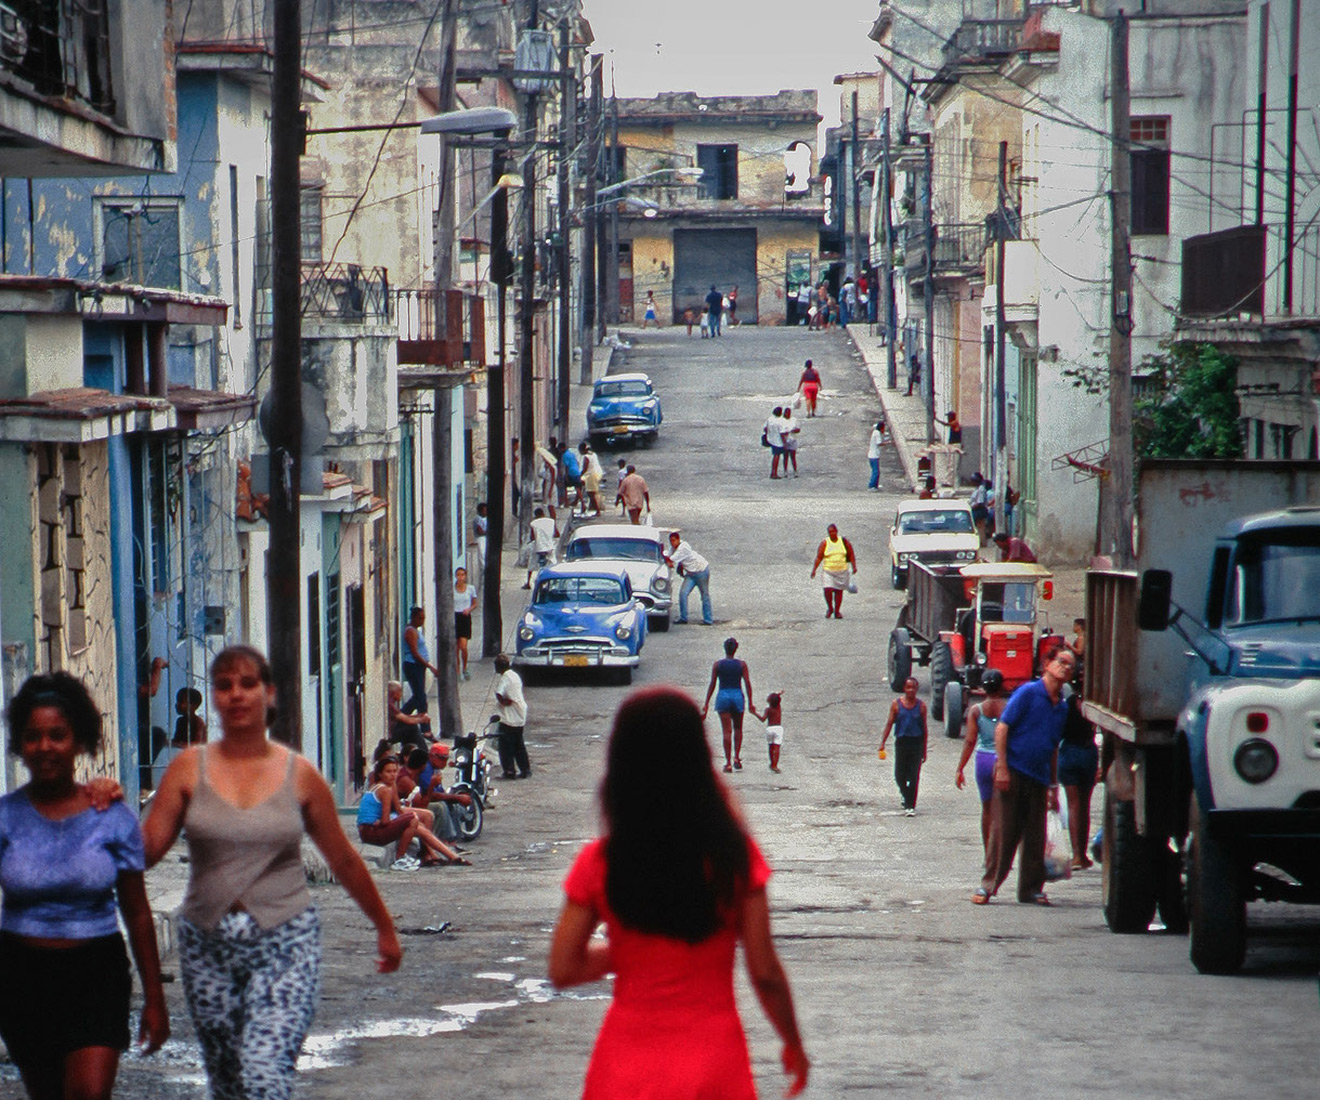 Кубинская Гавана образца 1996-го мало отличалась от себя самой 1960-го, когда прекратила экономические отношения с США. Зато есть советская техника.
